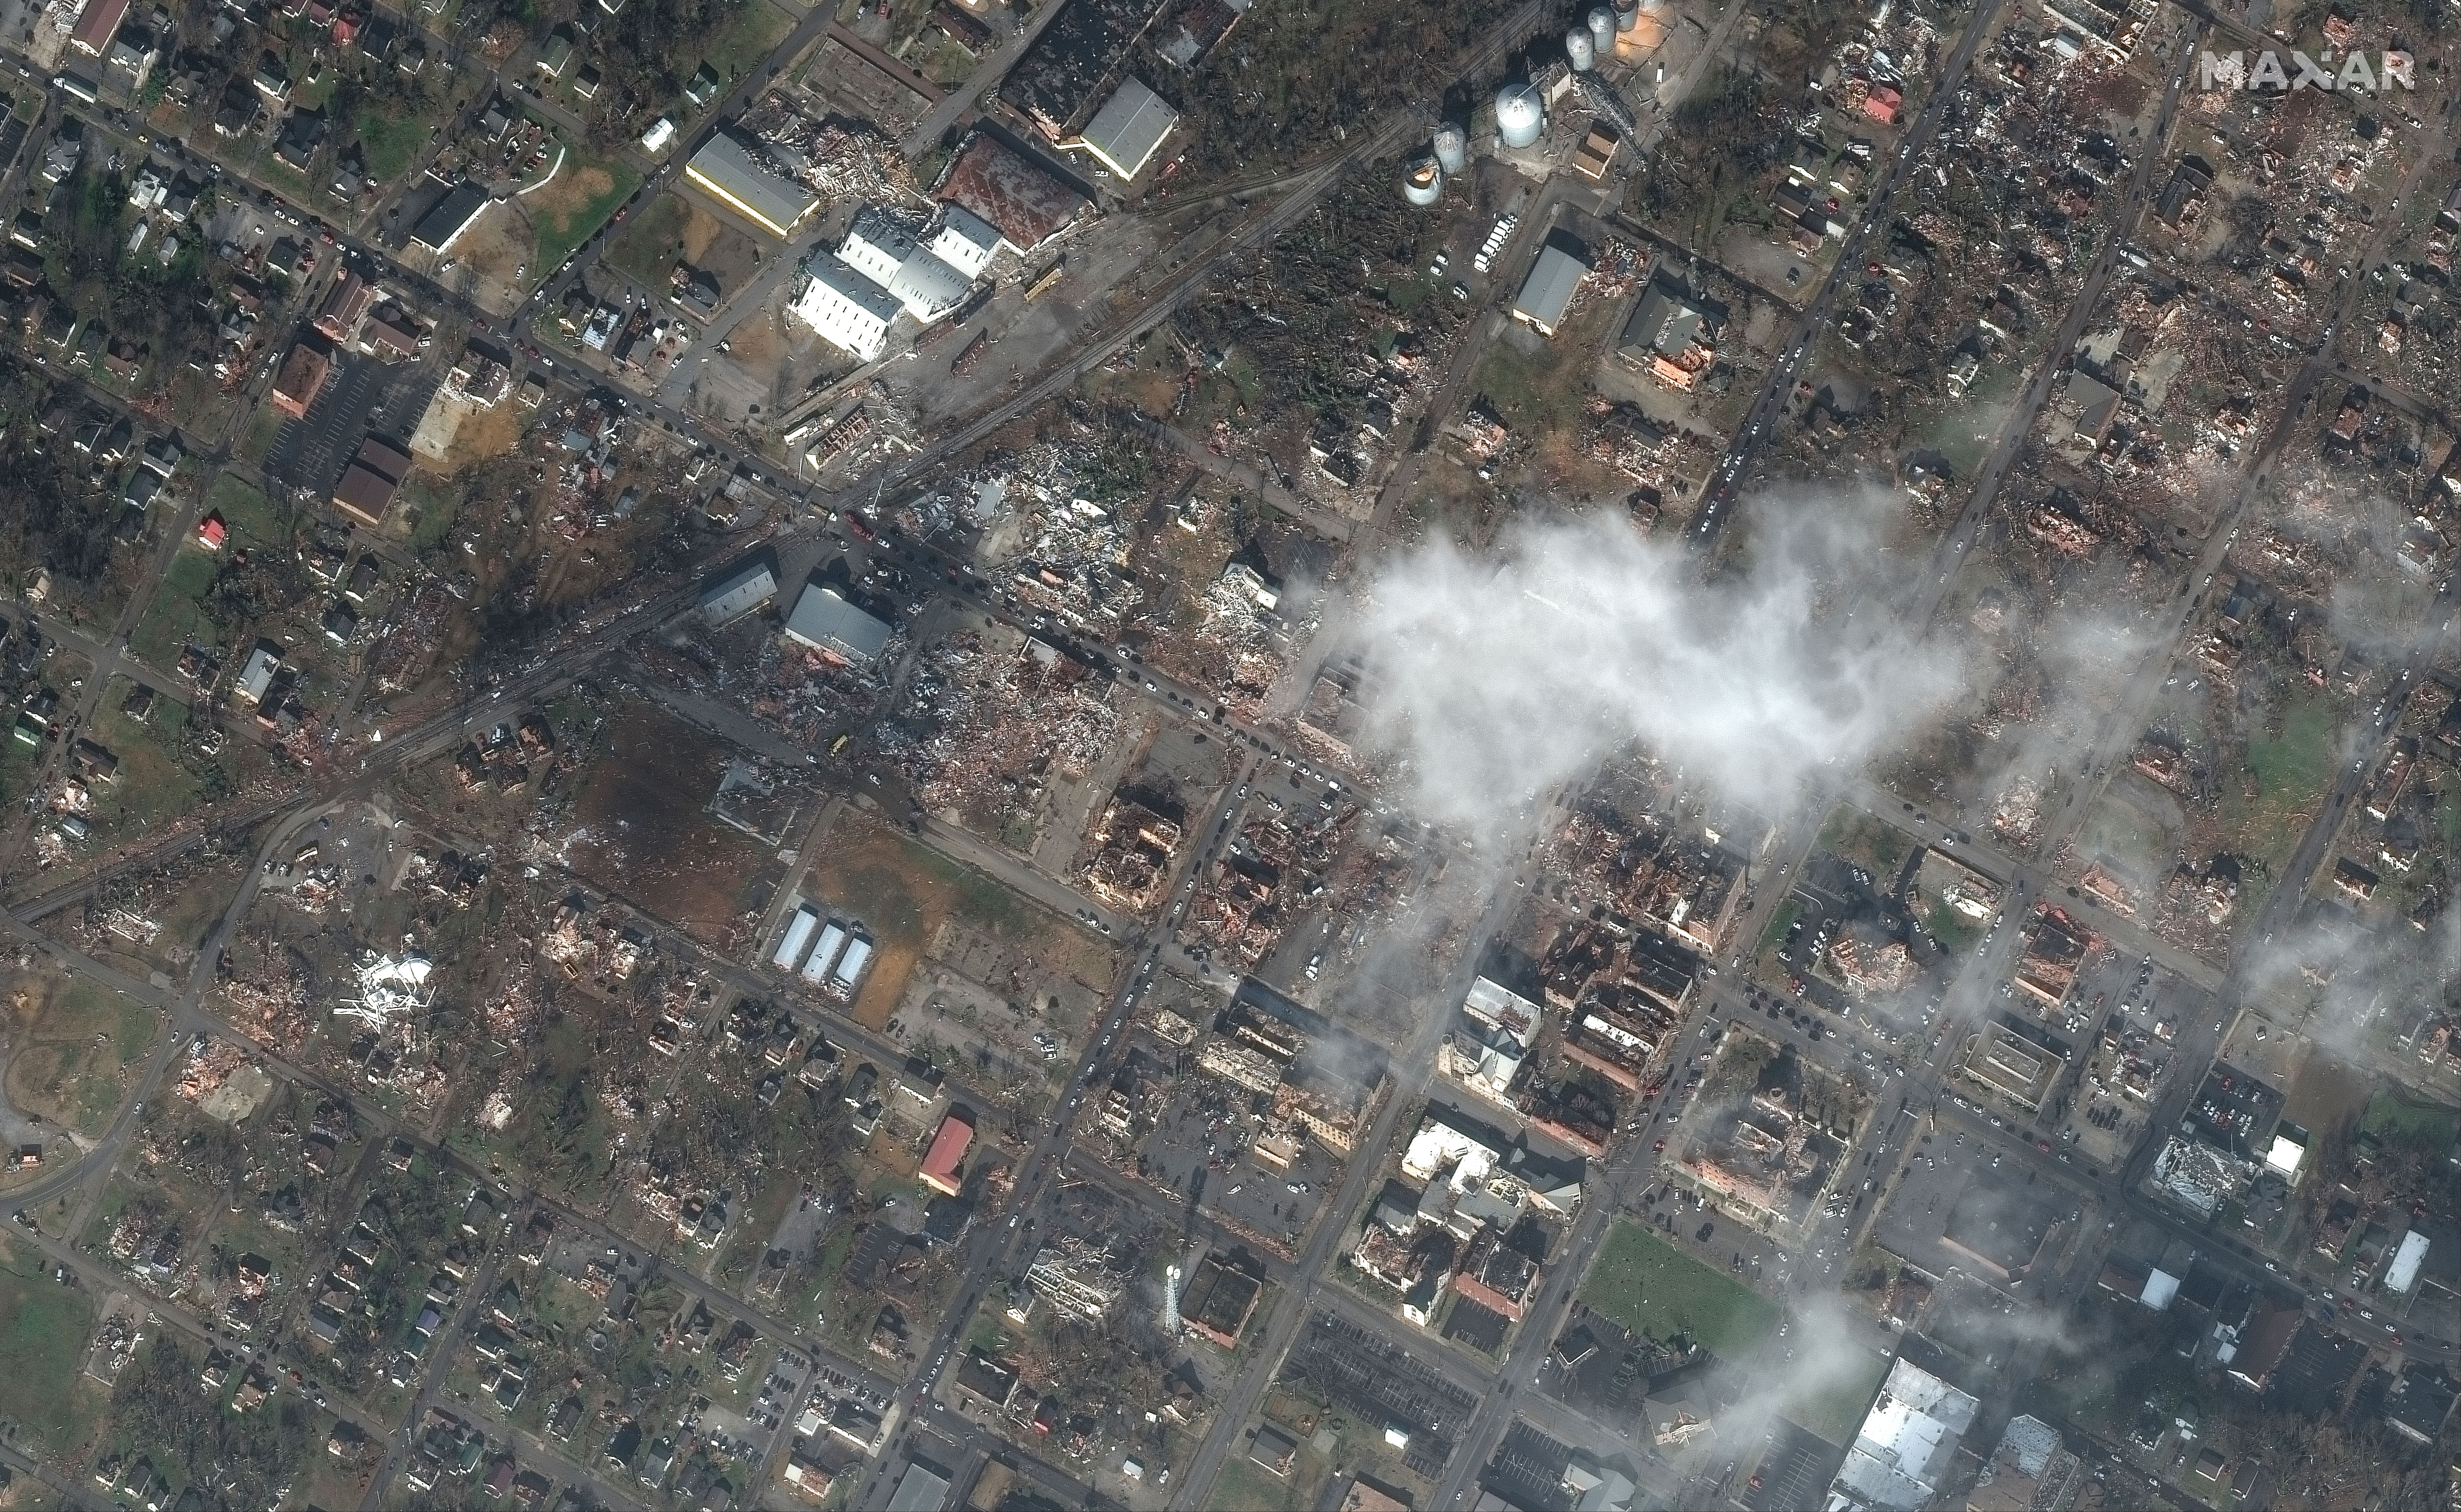 Mayfield, Kentucky after tornado destruction